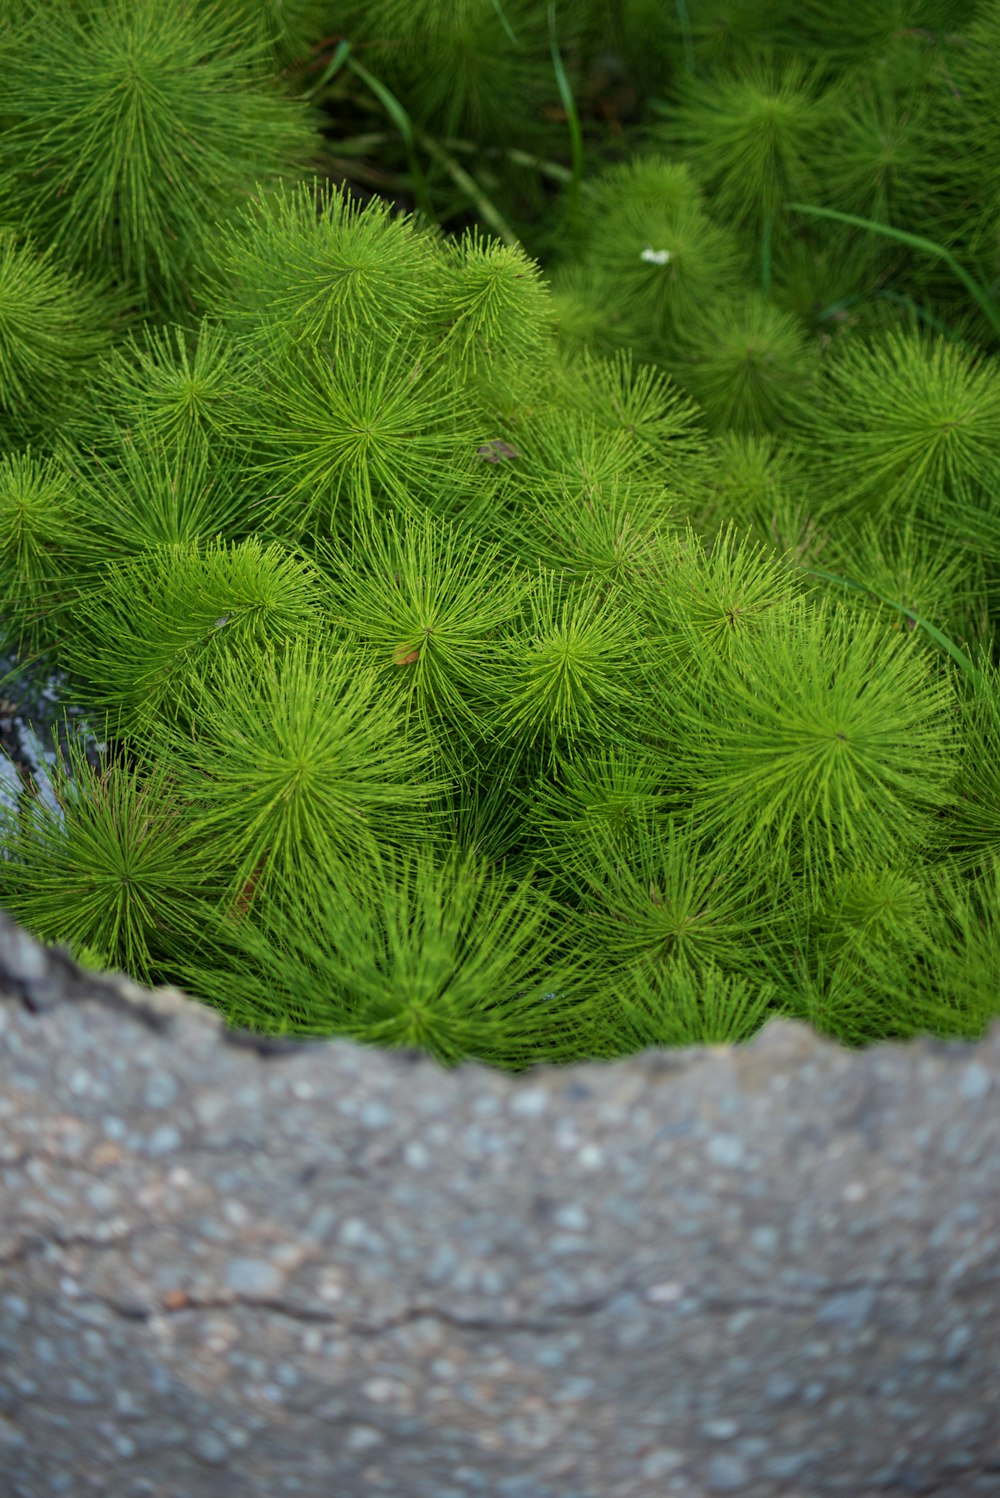 회색 바위에 녹색 식물